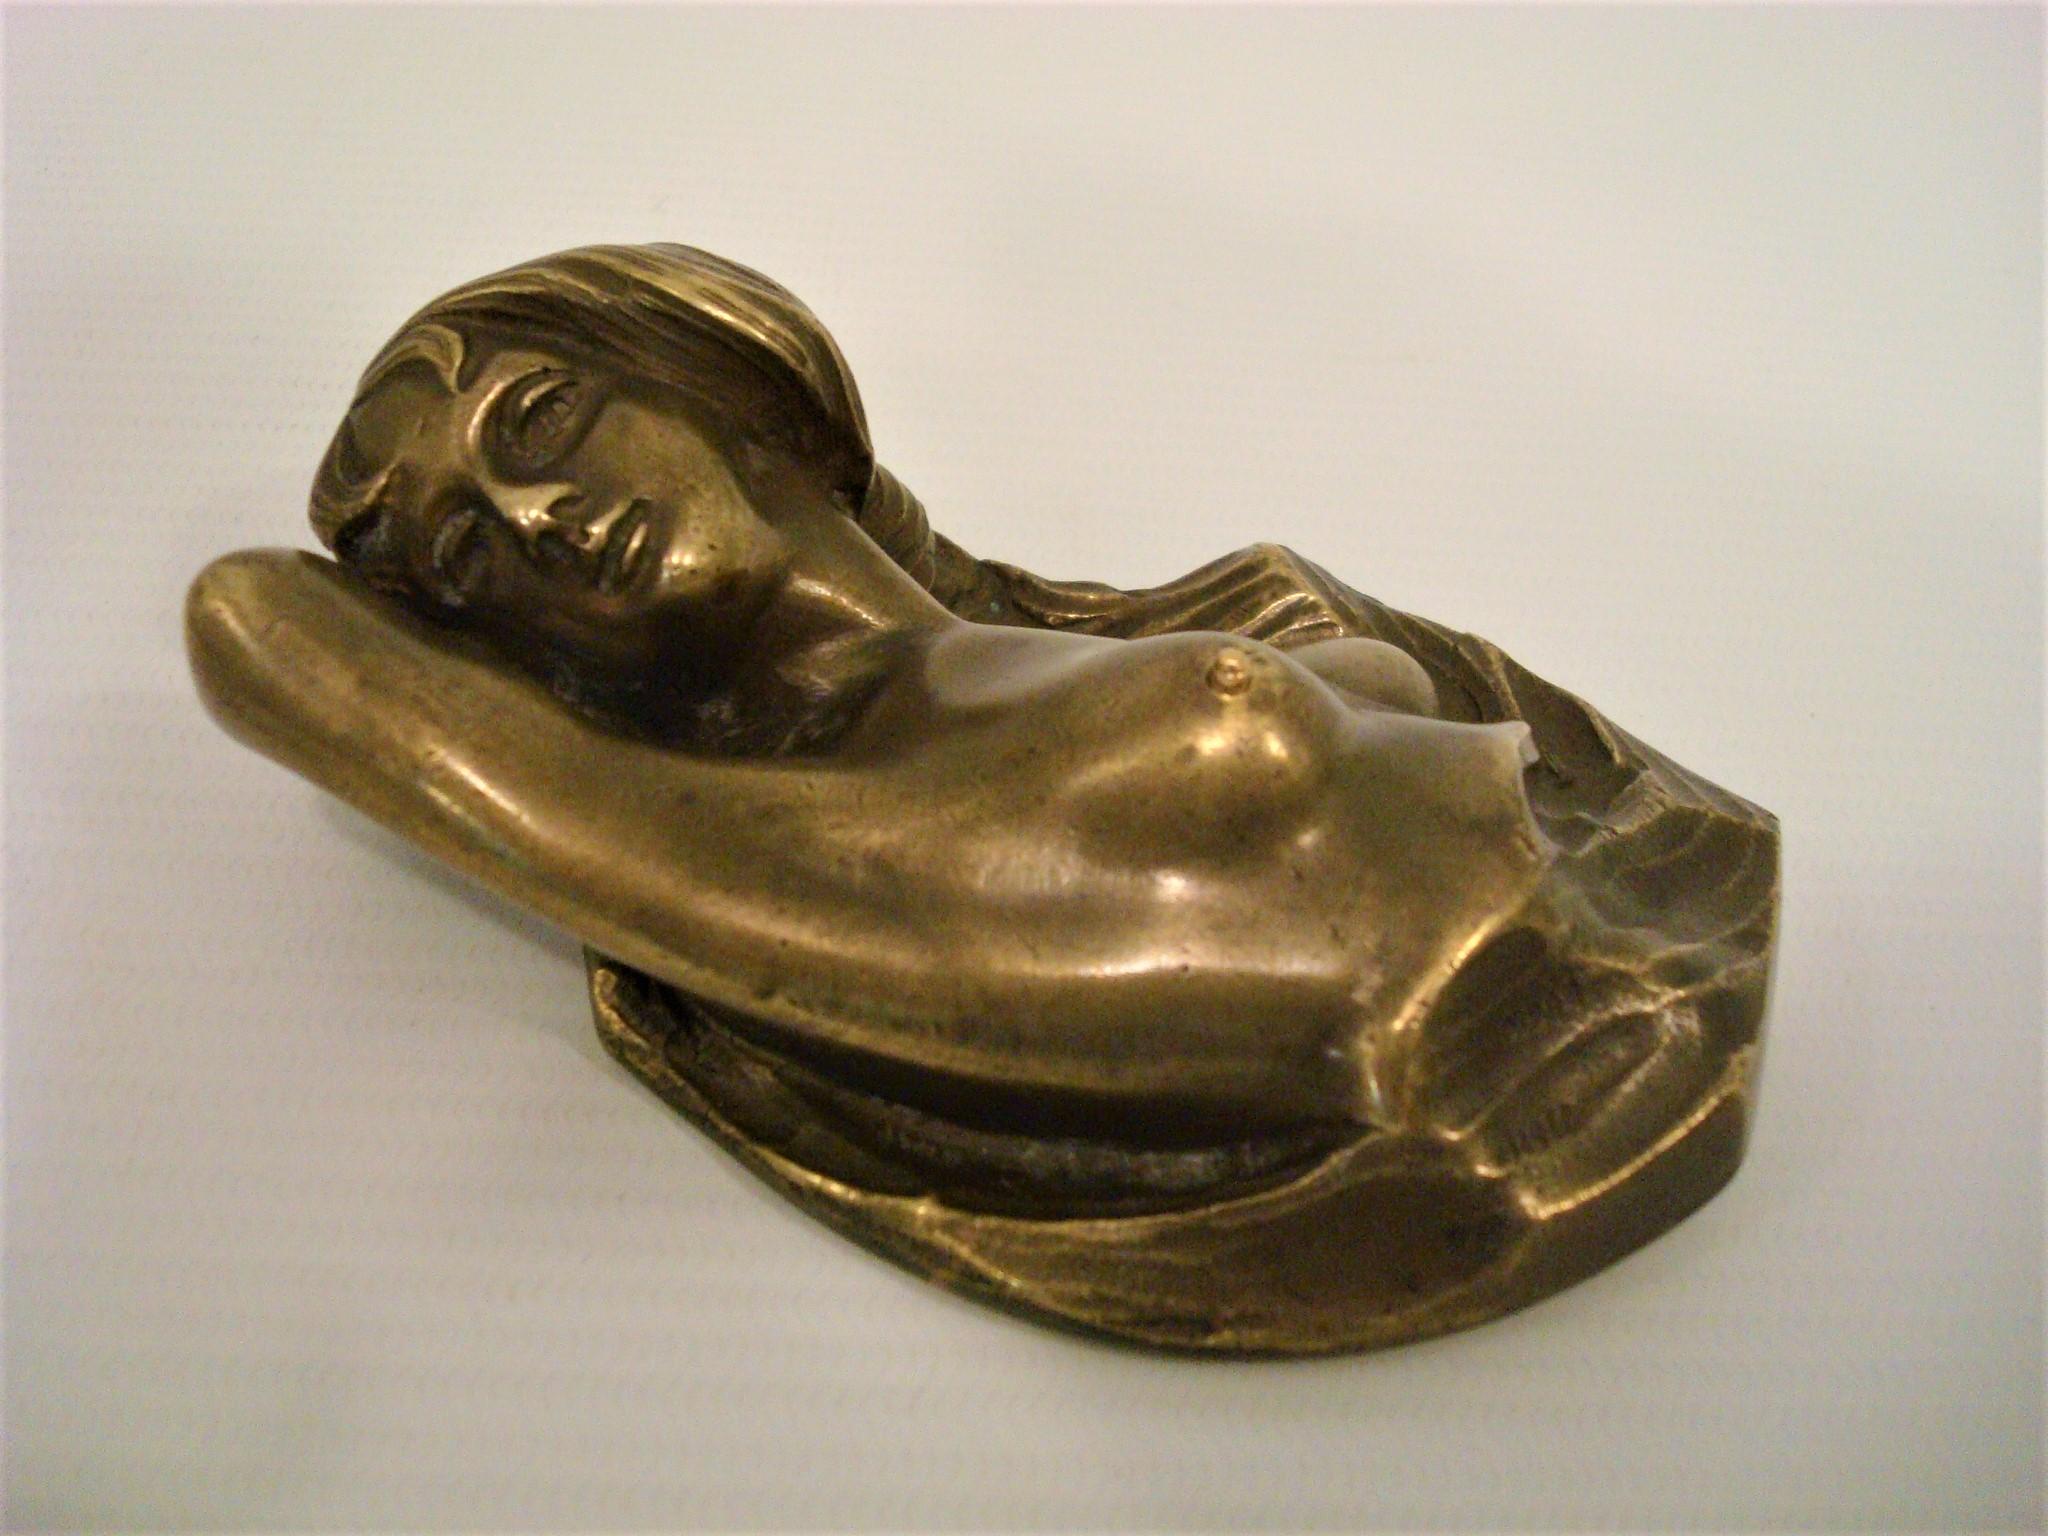 Erotische / nackte Frauen Bronzeskulptur Tischglocke drücken - Österreich 1900's
Apropos schwer zu findende Gegenstände! Dieser unfassbare Klingelstoß ist der einzige erotische Klingelstoß, den wir je gesehen haben. Normalerweise bekommt man einen